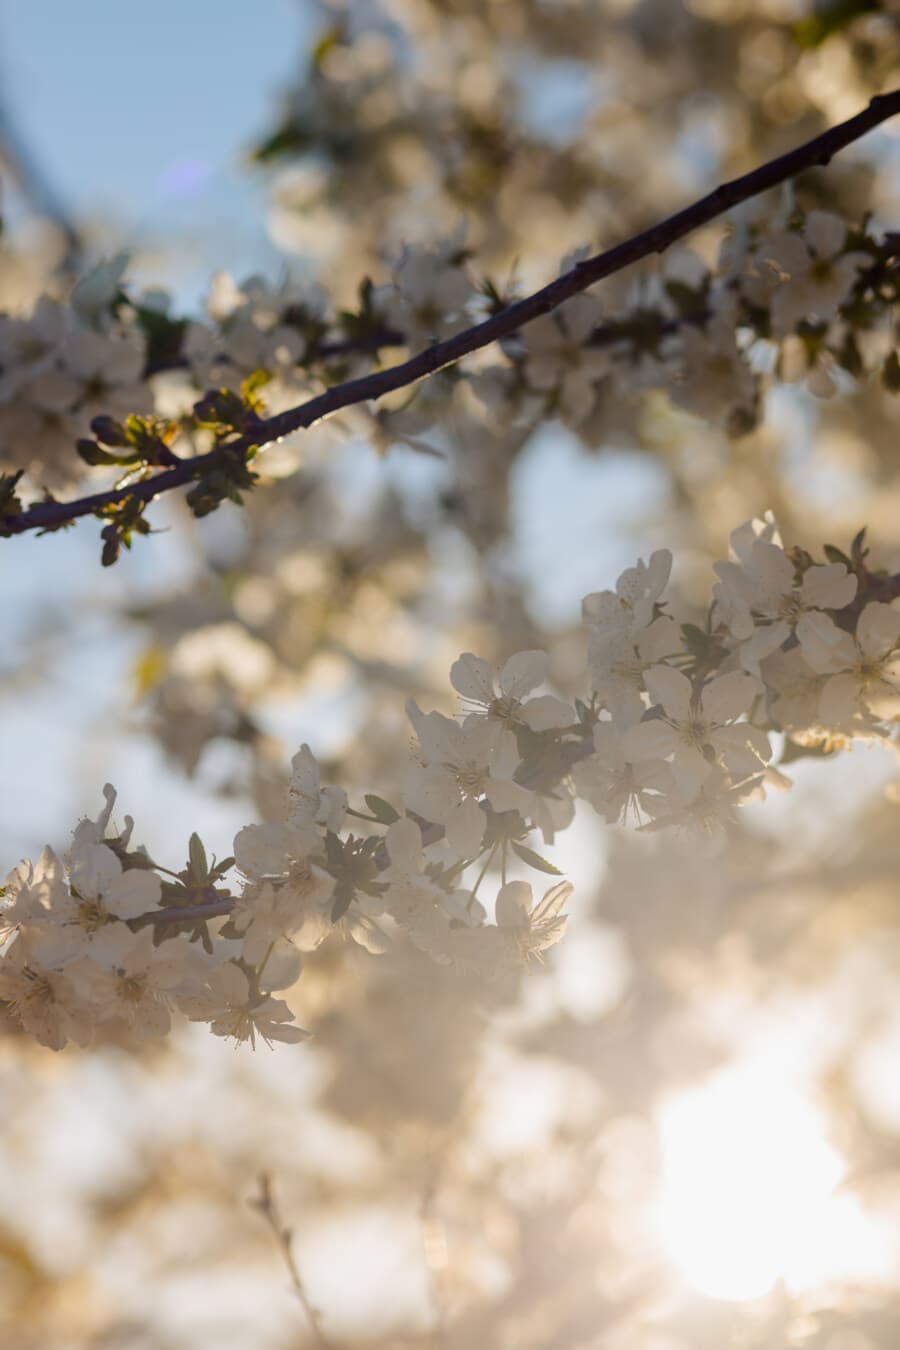 våren, solsken, blommande cherry, soligt, grenar, fruktträd, vit blomma, solstrålar, bakgrundsbelyst, spring